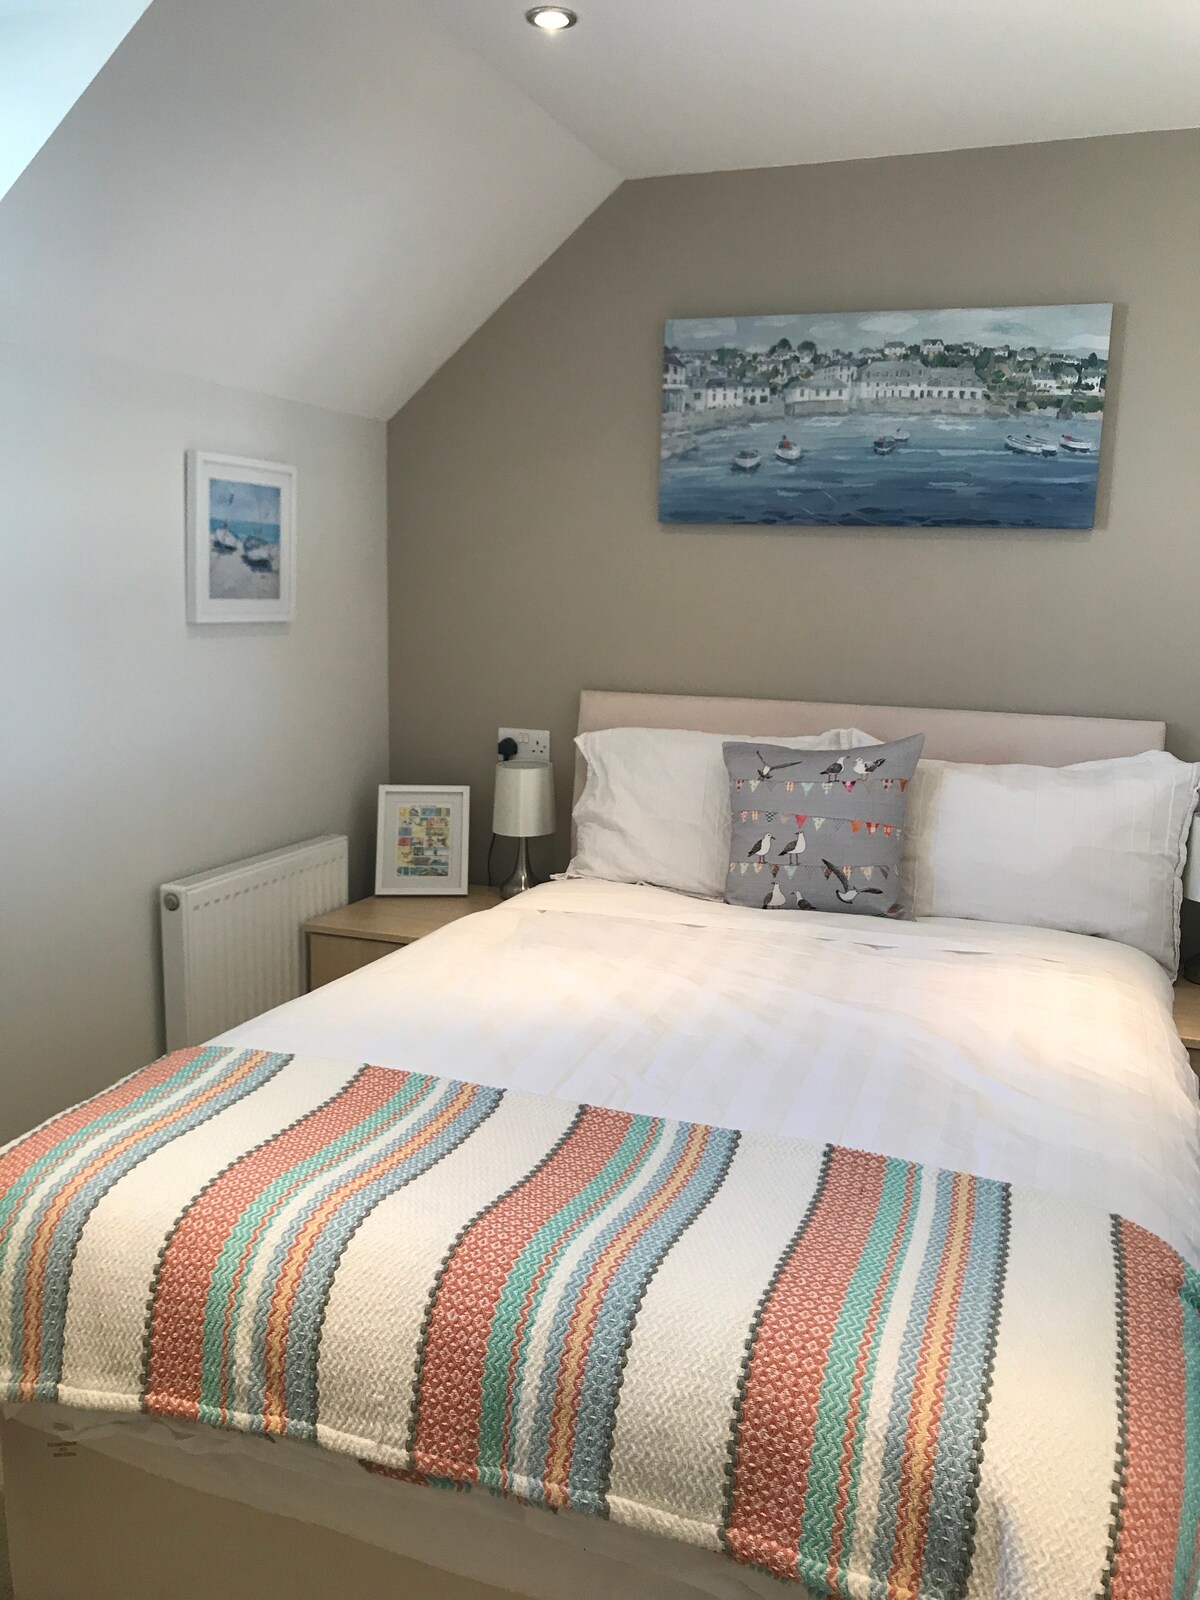 2 bedroom luxury flat in the heart of Wells